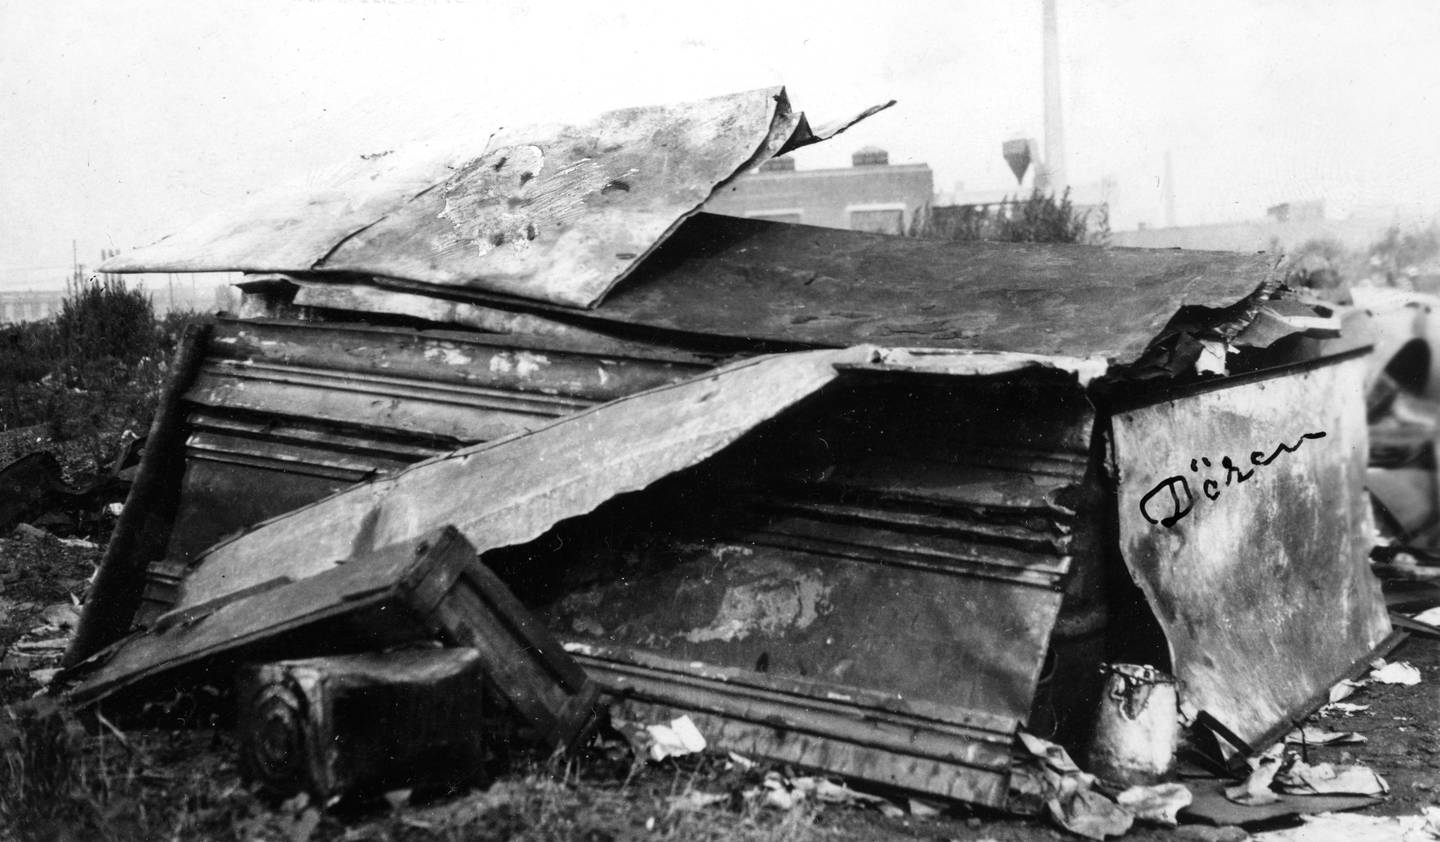 Ørkenen Sur besto av mange boliger av sink og jernplater. Bildet fra 1929 er merket «Dette var i sin tid den fineste hytte i ørkenen». Foto: Søren Hesby, Blå Kors/Oslo byarkiv